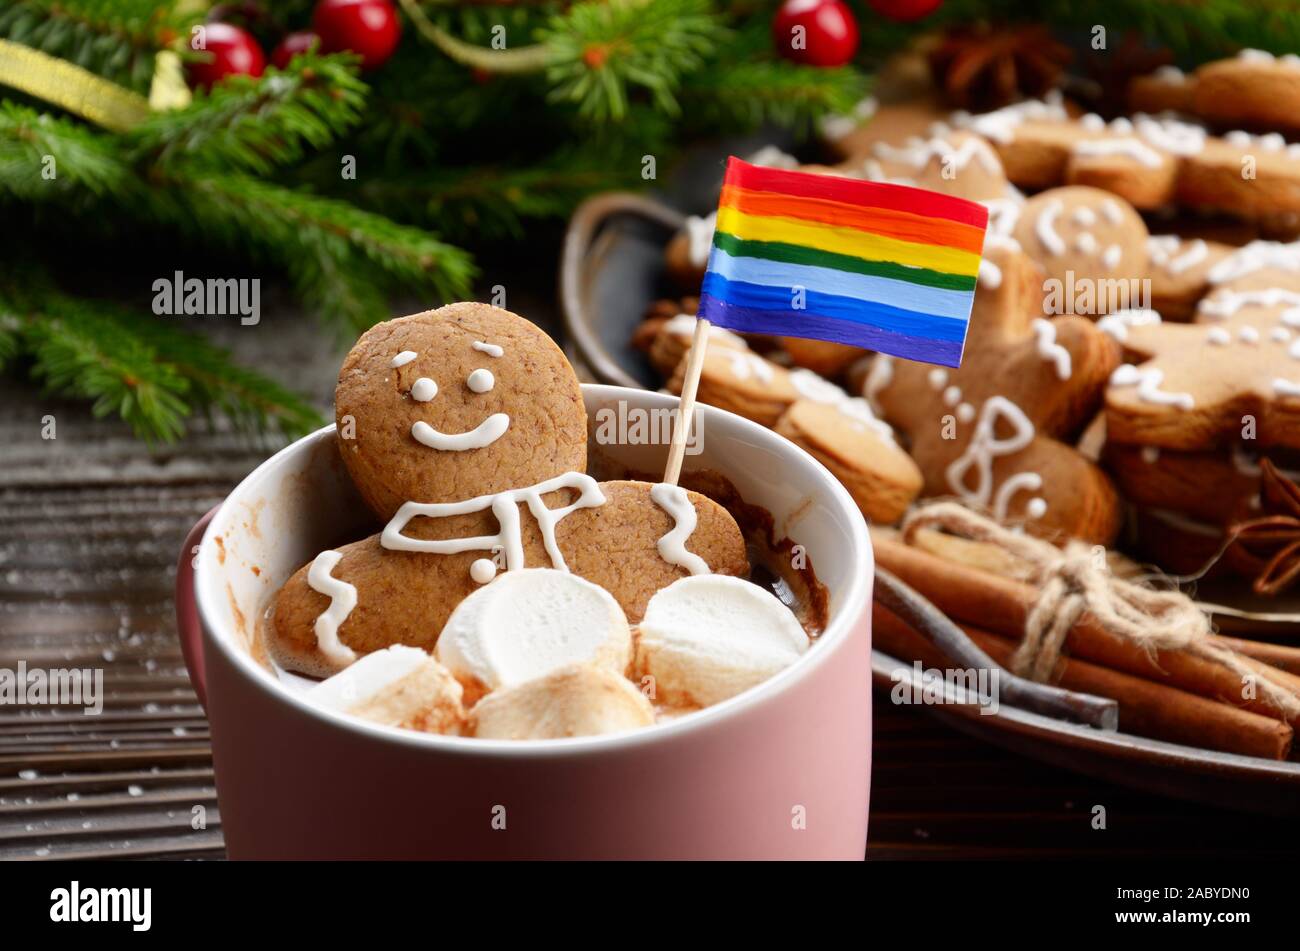 Rosa la tazza con il cioccolato caldo marshmallows e gingerbread man con bandiera arcobaleno sullo sfondo del ramo di abete e il vassoio con i cookie Foto Stock